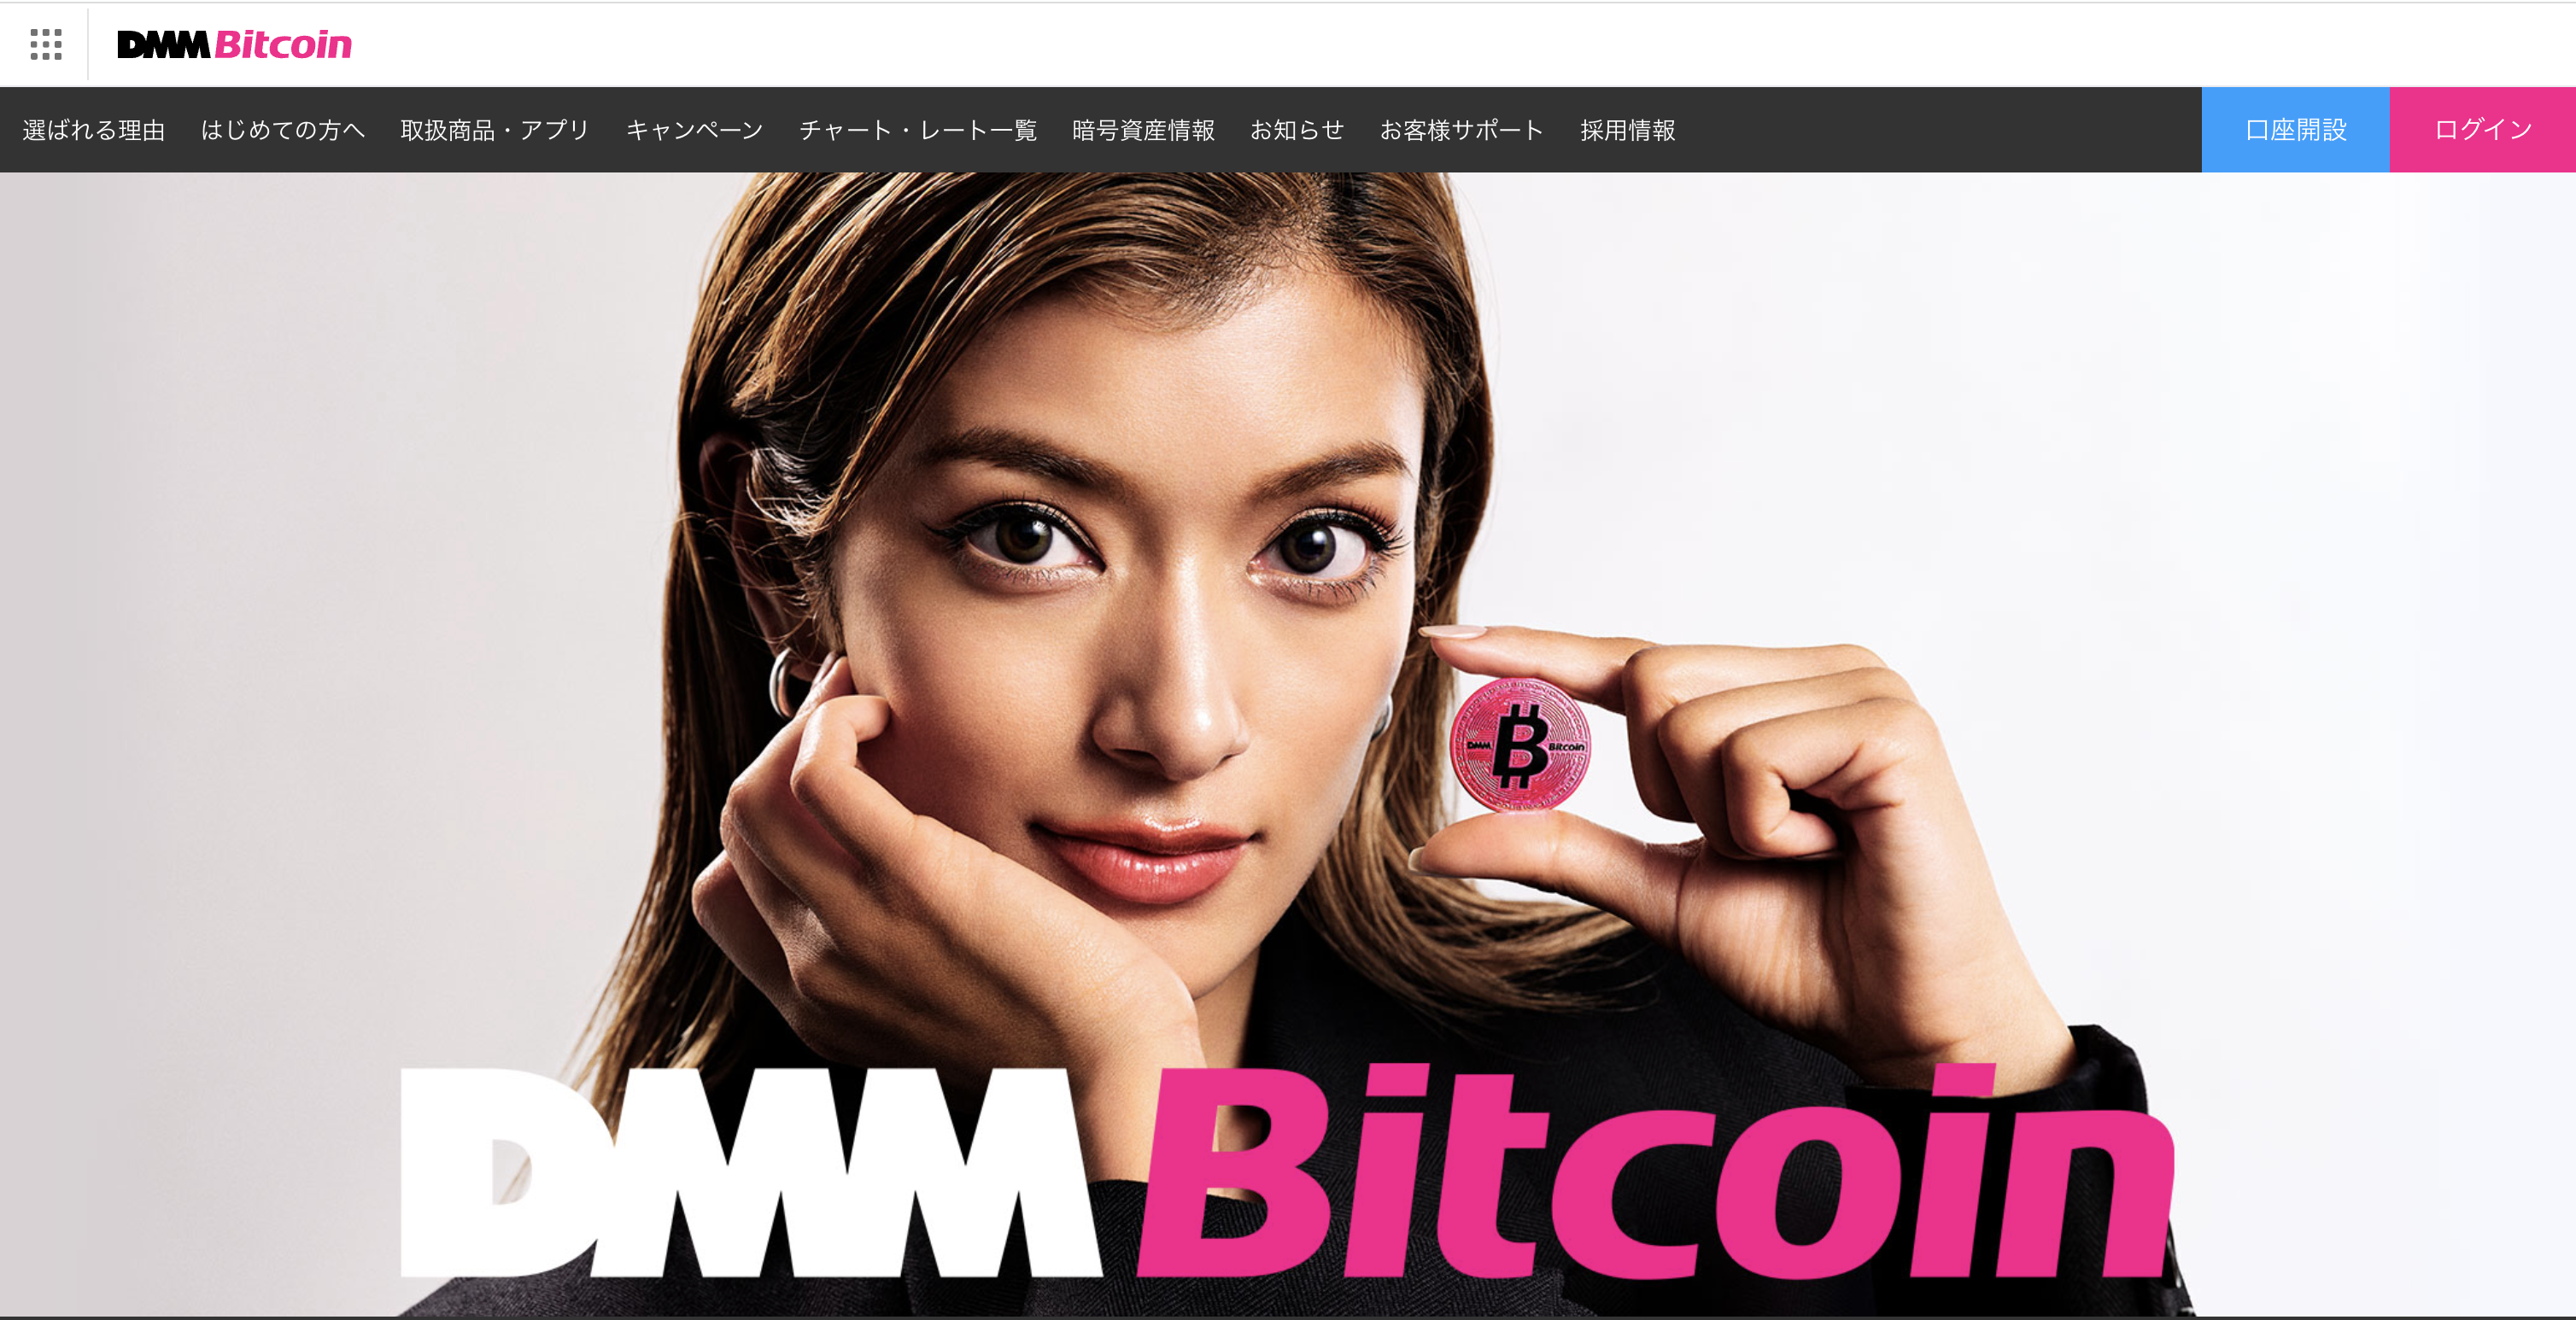 DMM Bitcoin,口コミ記事